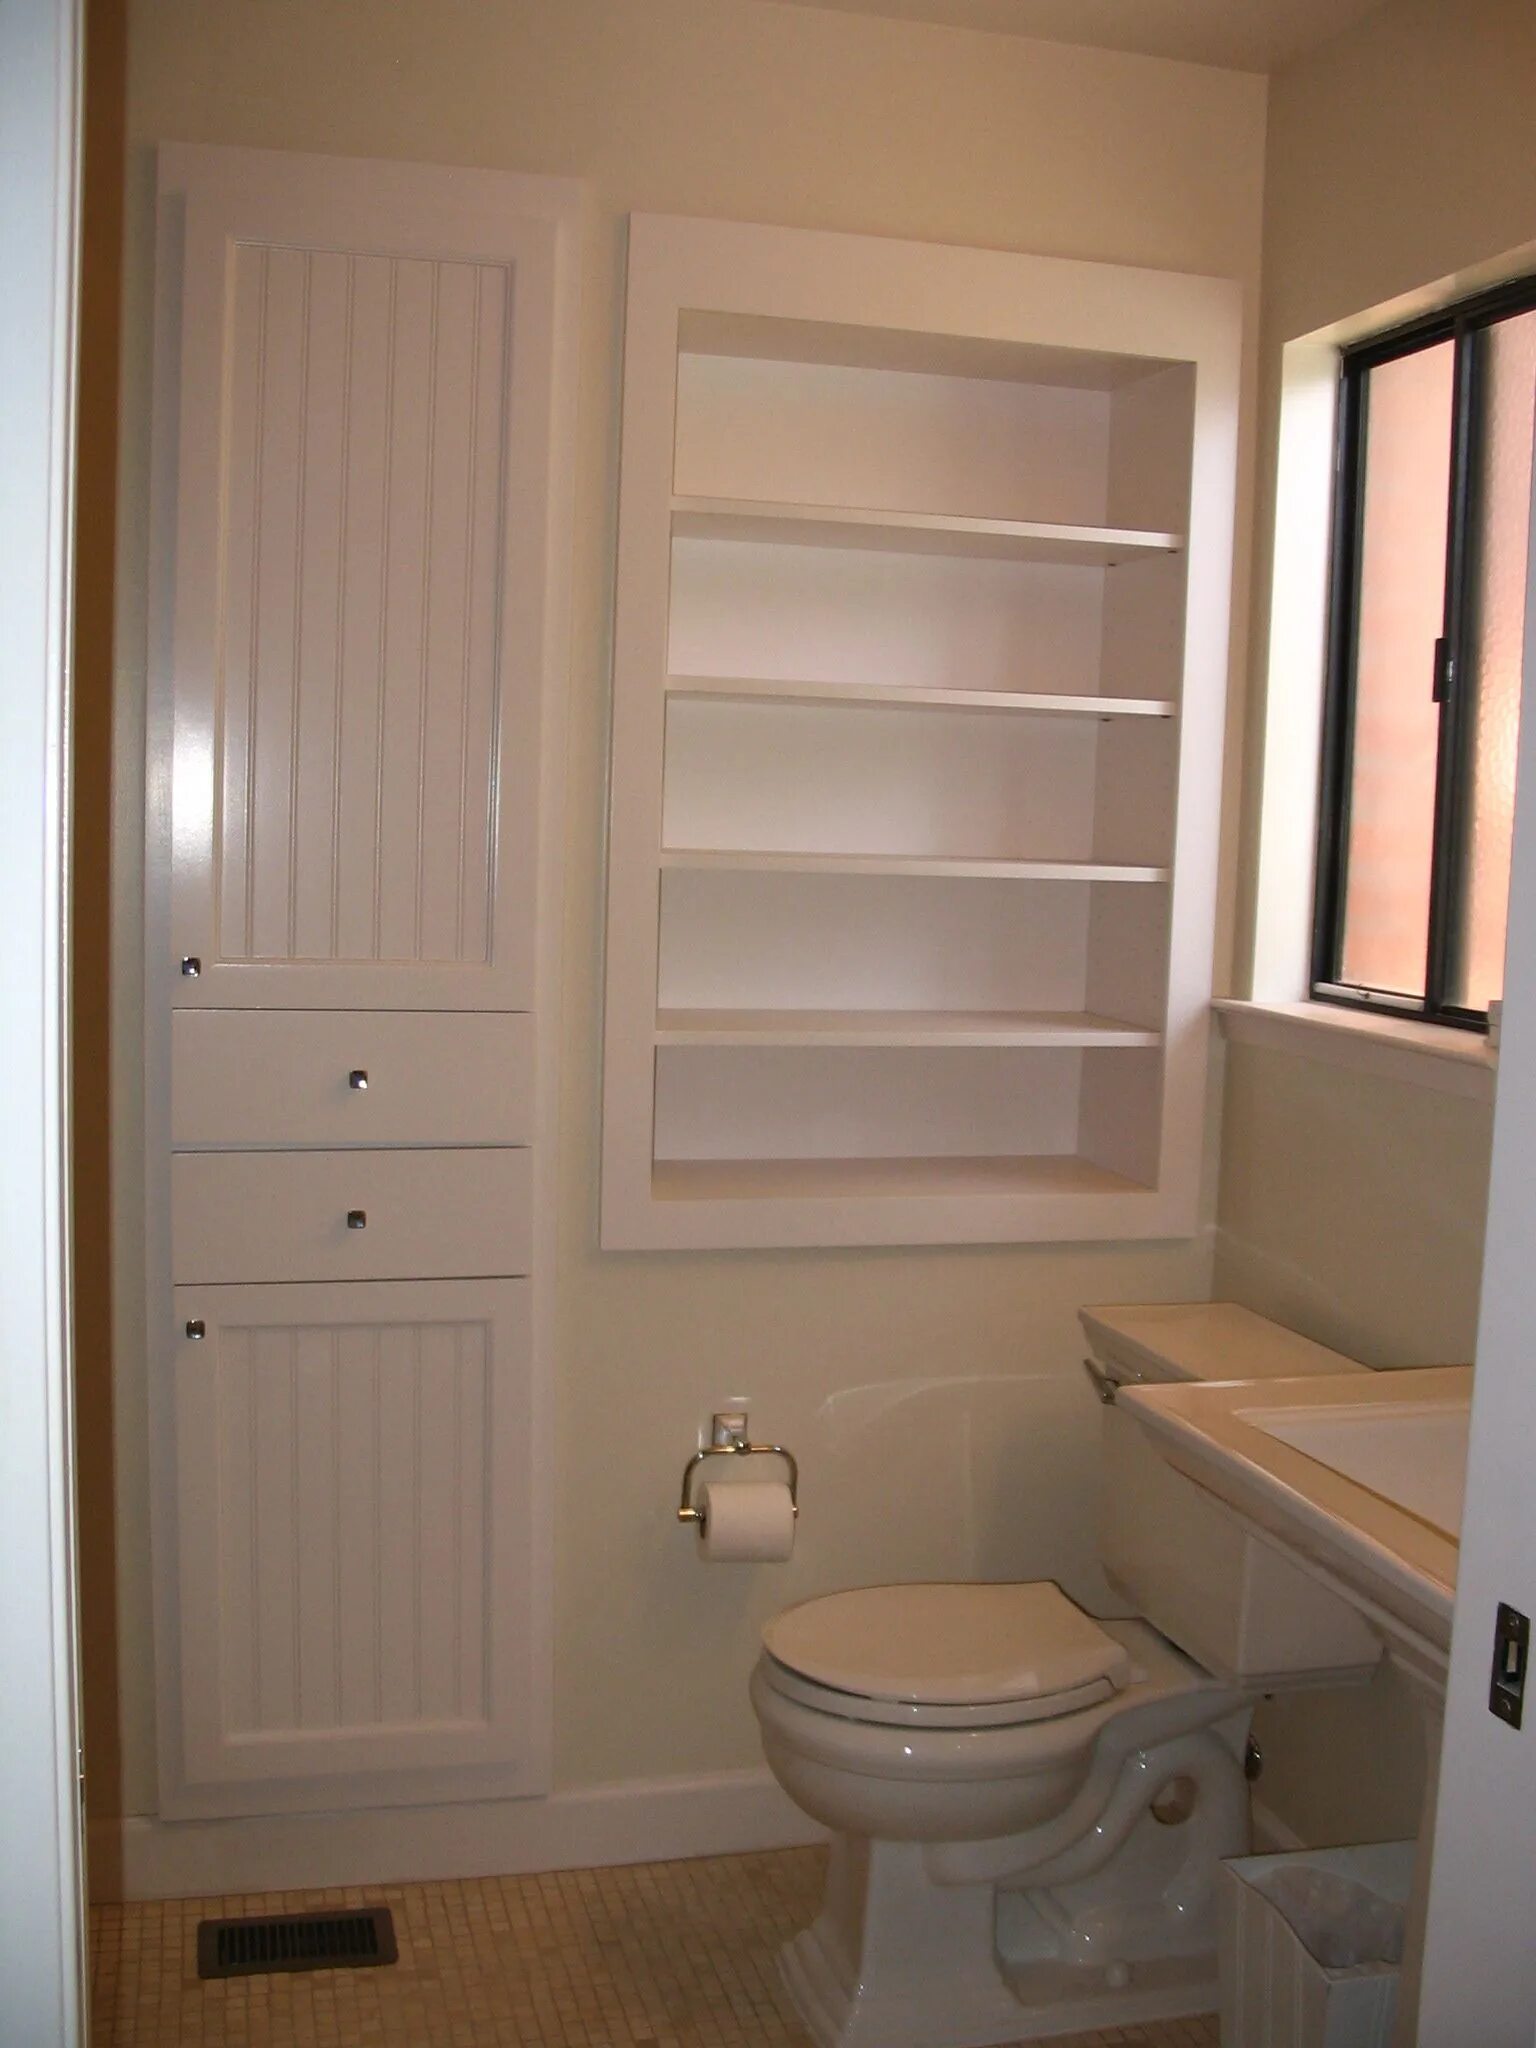 Встроенный шкаф в ванной. Встроенные шкафчики в ванной. Встроенные шкафы в ванную комнату. Встраиваемый шкаф в ванной. Шкаф в ванной туалете